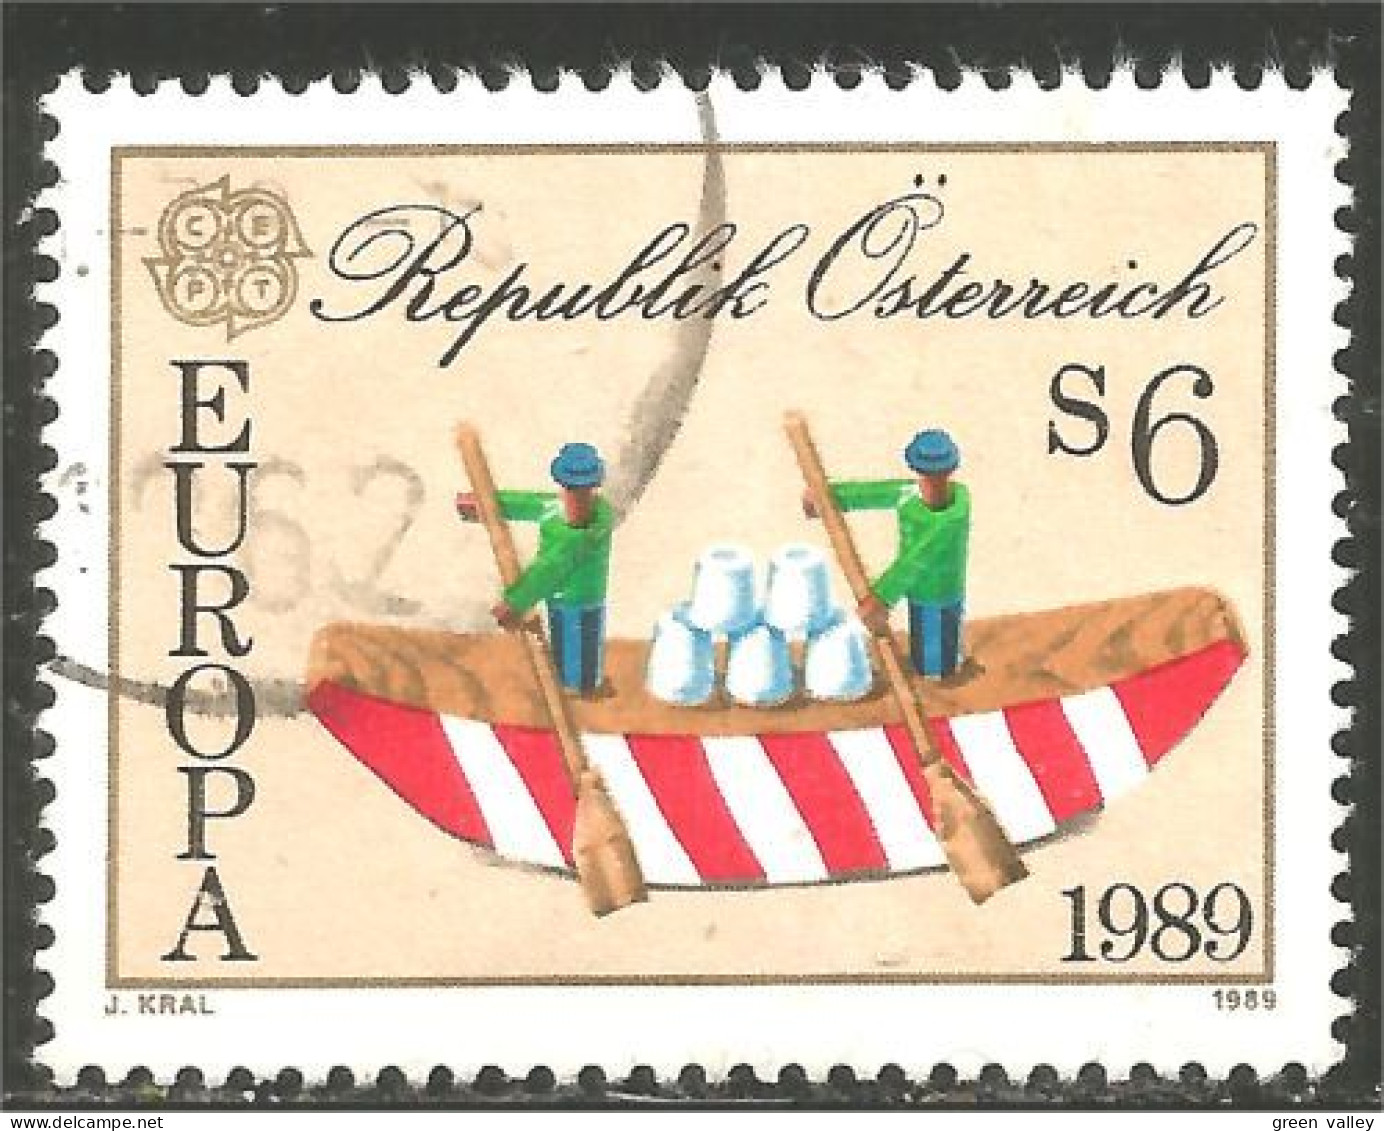 EU89-14c EUROPA-CEPT 1989 Austria Boat Bateau Jeux Enfants Children Games Kinderspiele - Ships